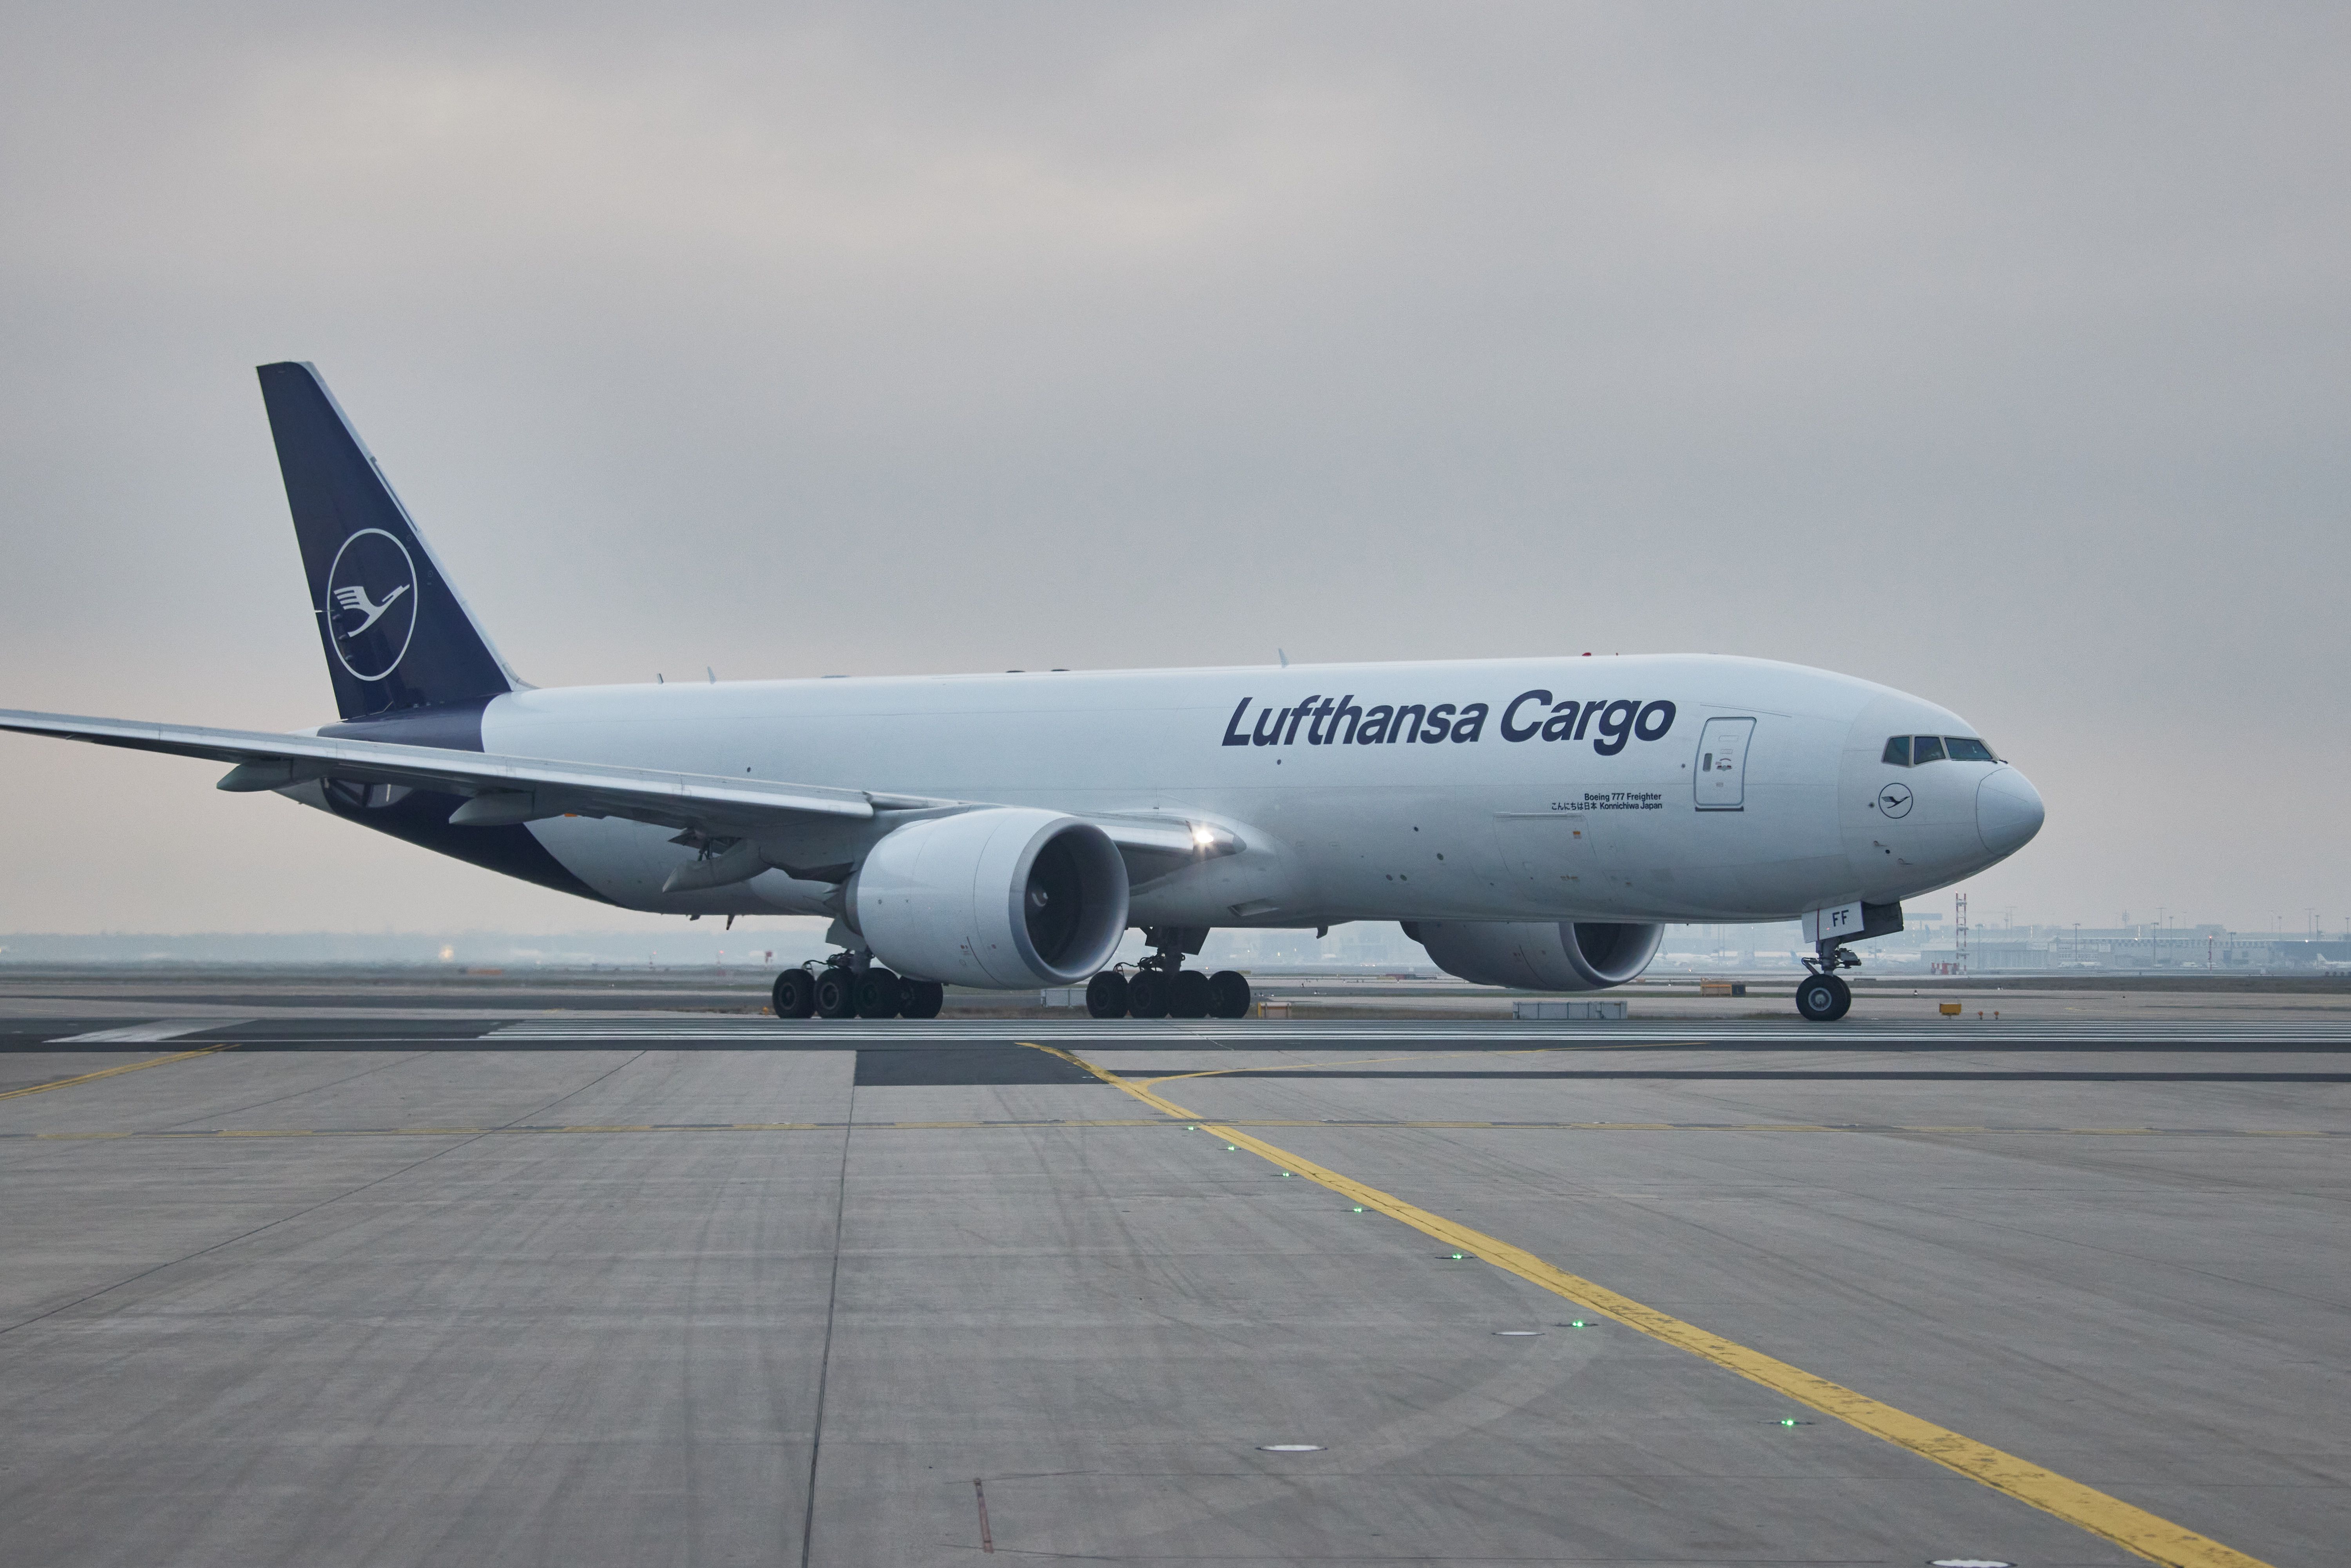 A Lufthansa Cargo aircraft taxiing